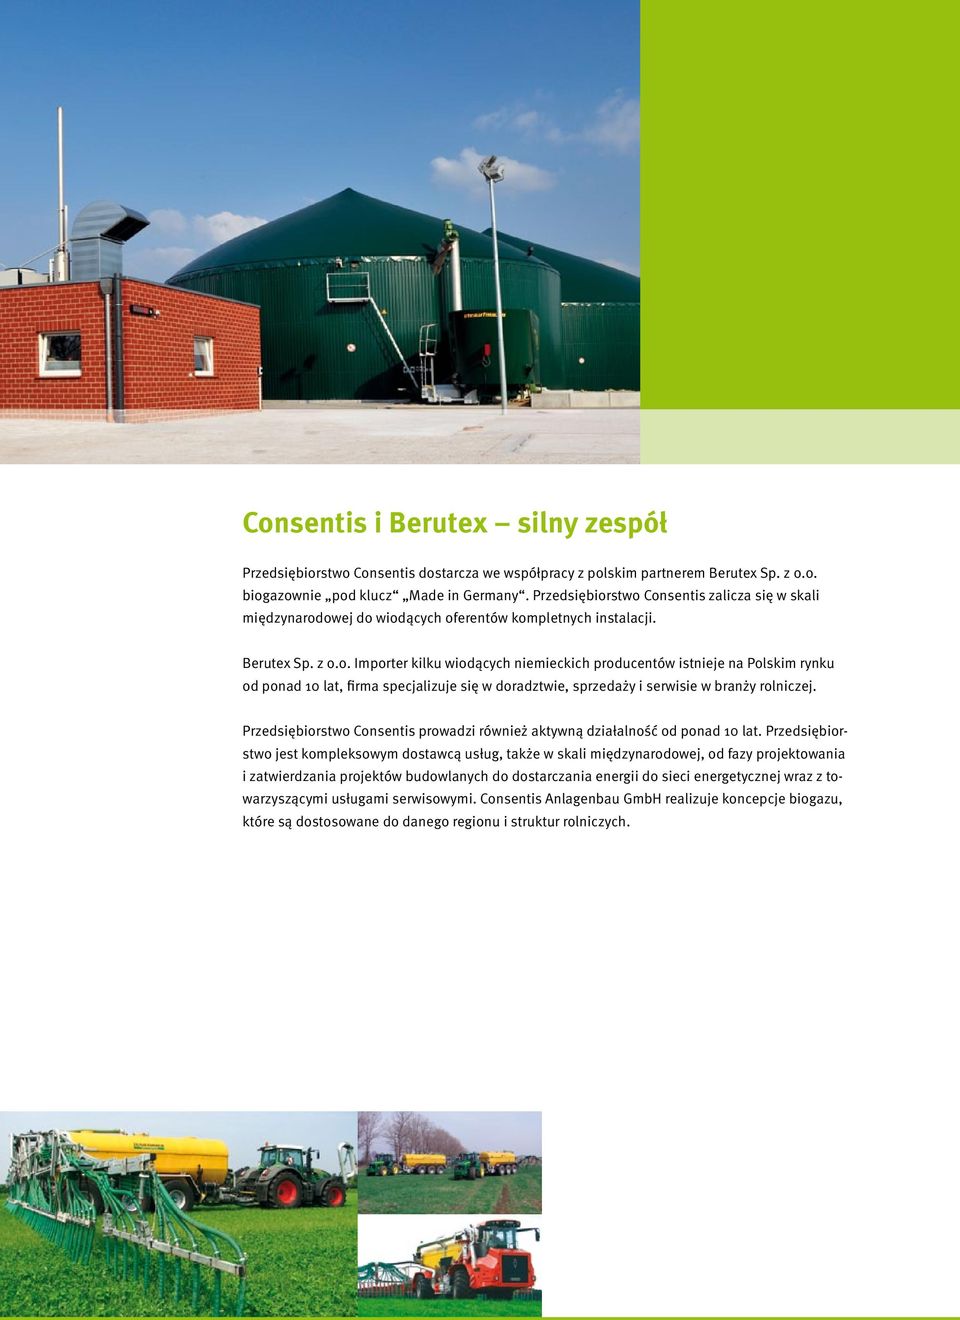 Przedsiębiorstwo Consentis prowadzi również aktywną działalność od ponad 10 lat.